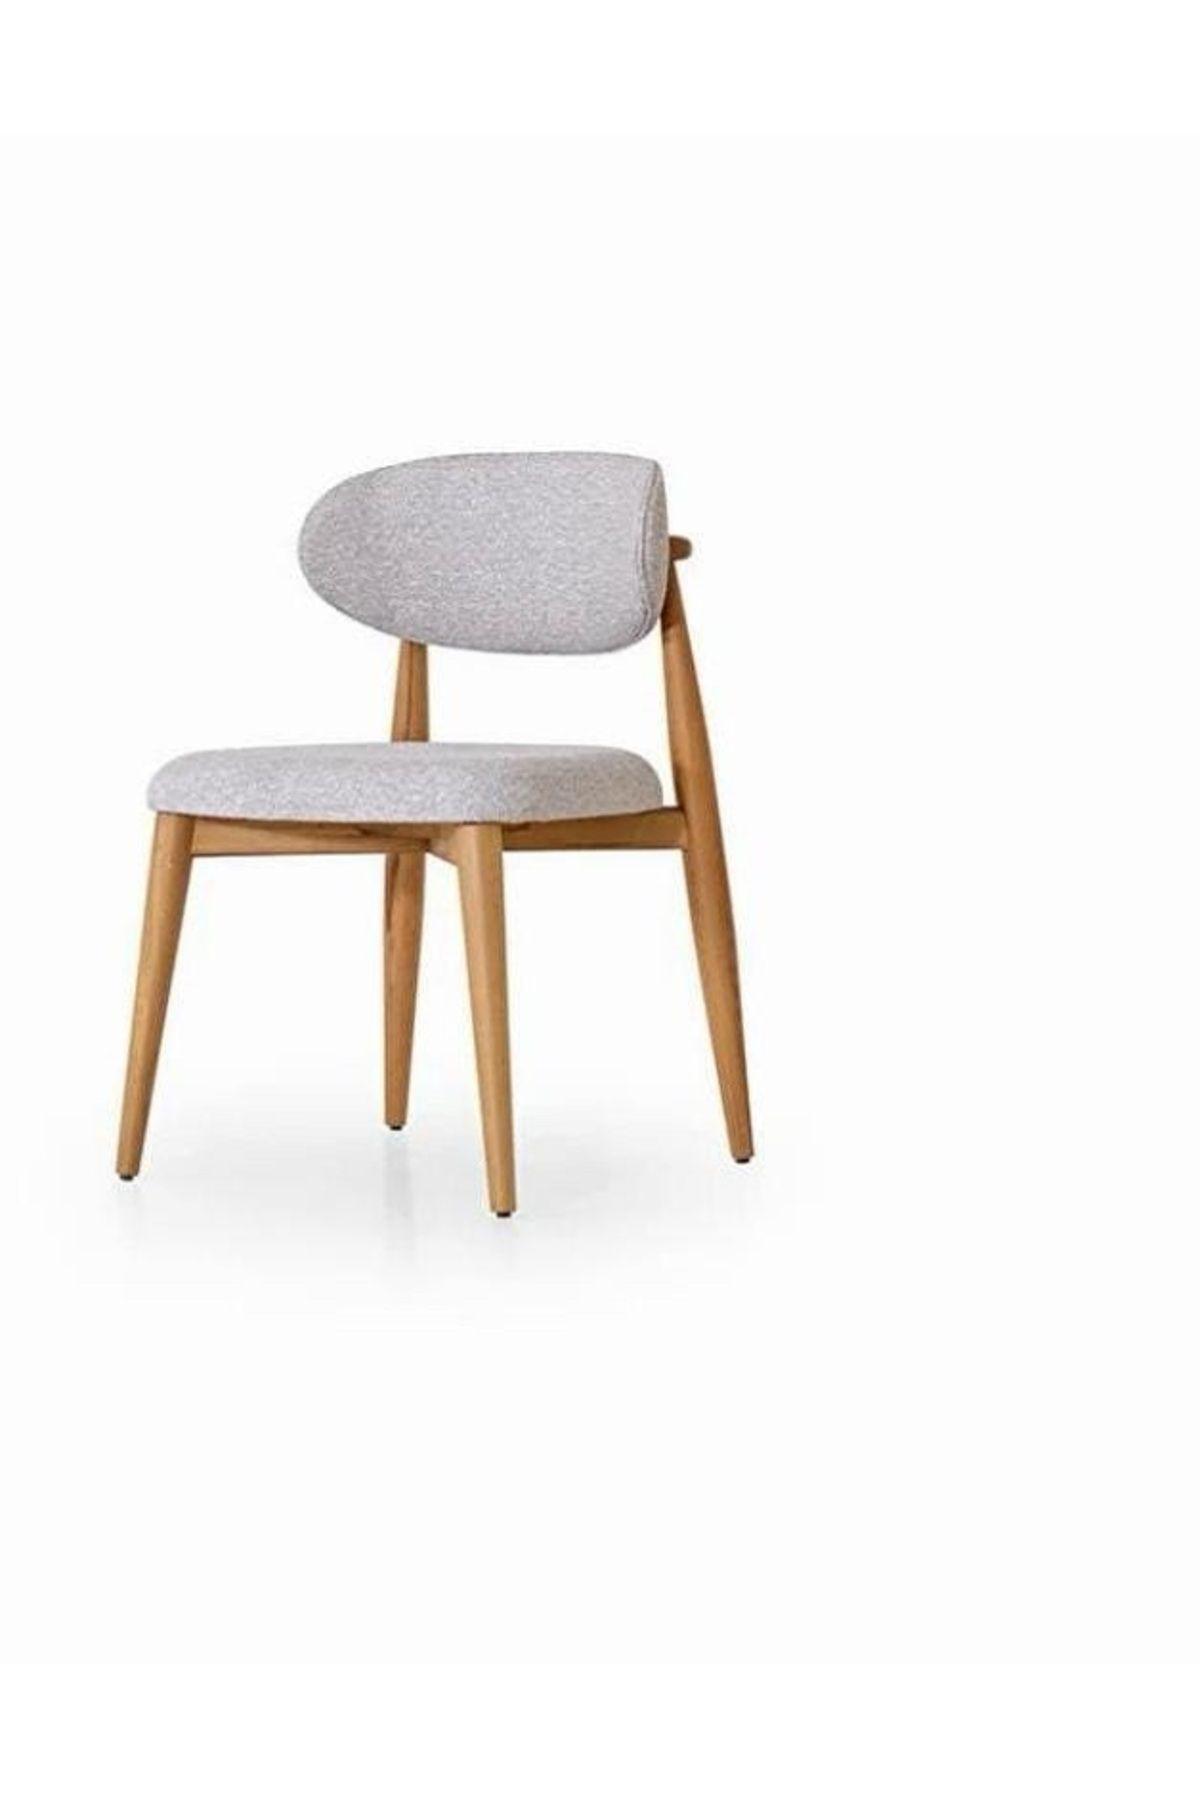 Kaktüs Avm Ahşap Sandalye Teddy Sandalye Salon Sandalye Silinebilir Mutfak Sandalyesi Yemek Masası Sandalyesi